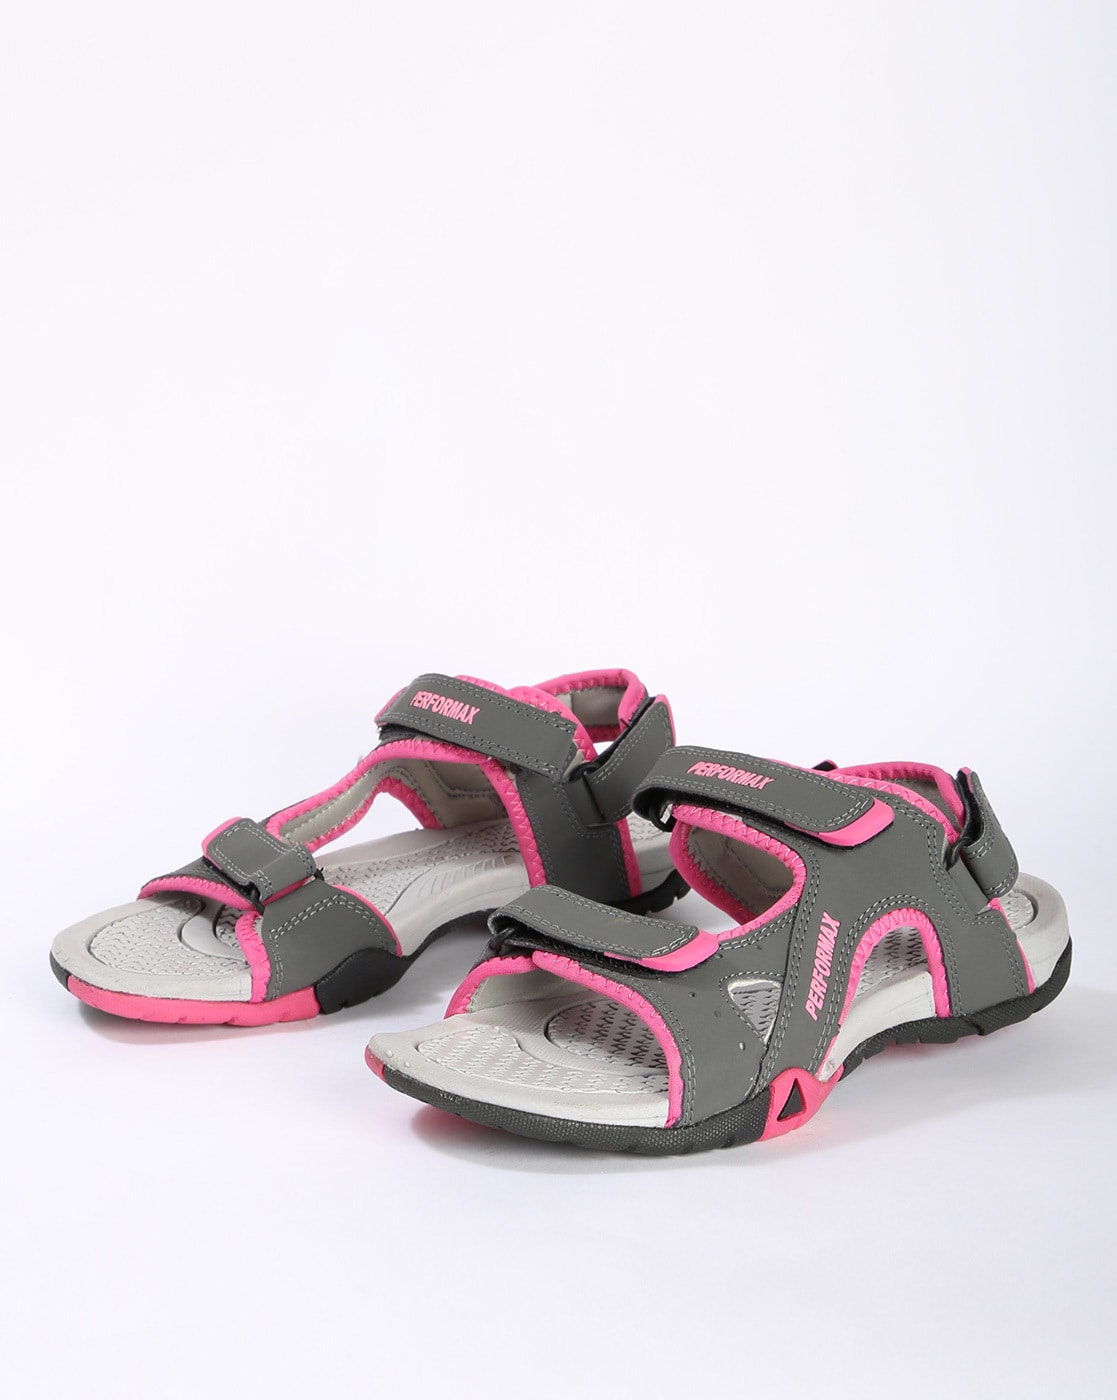 ladies sports sandals online